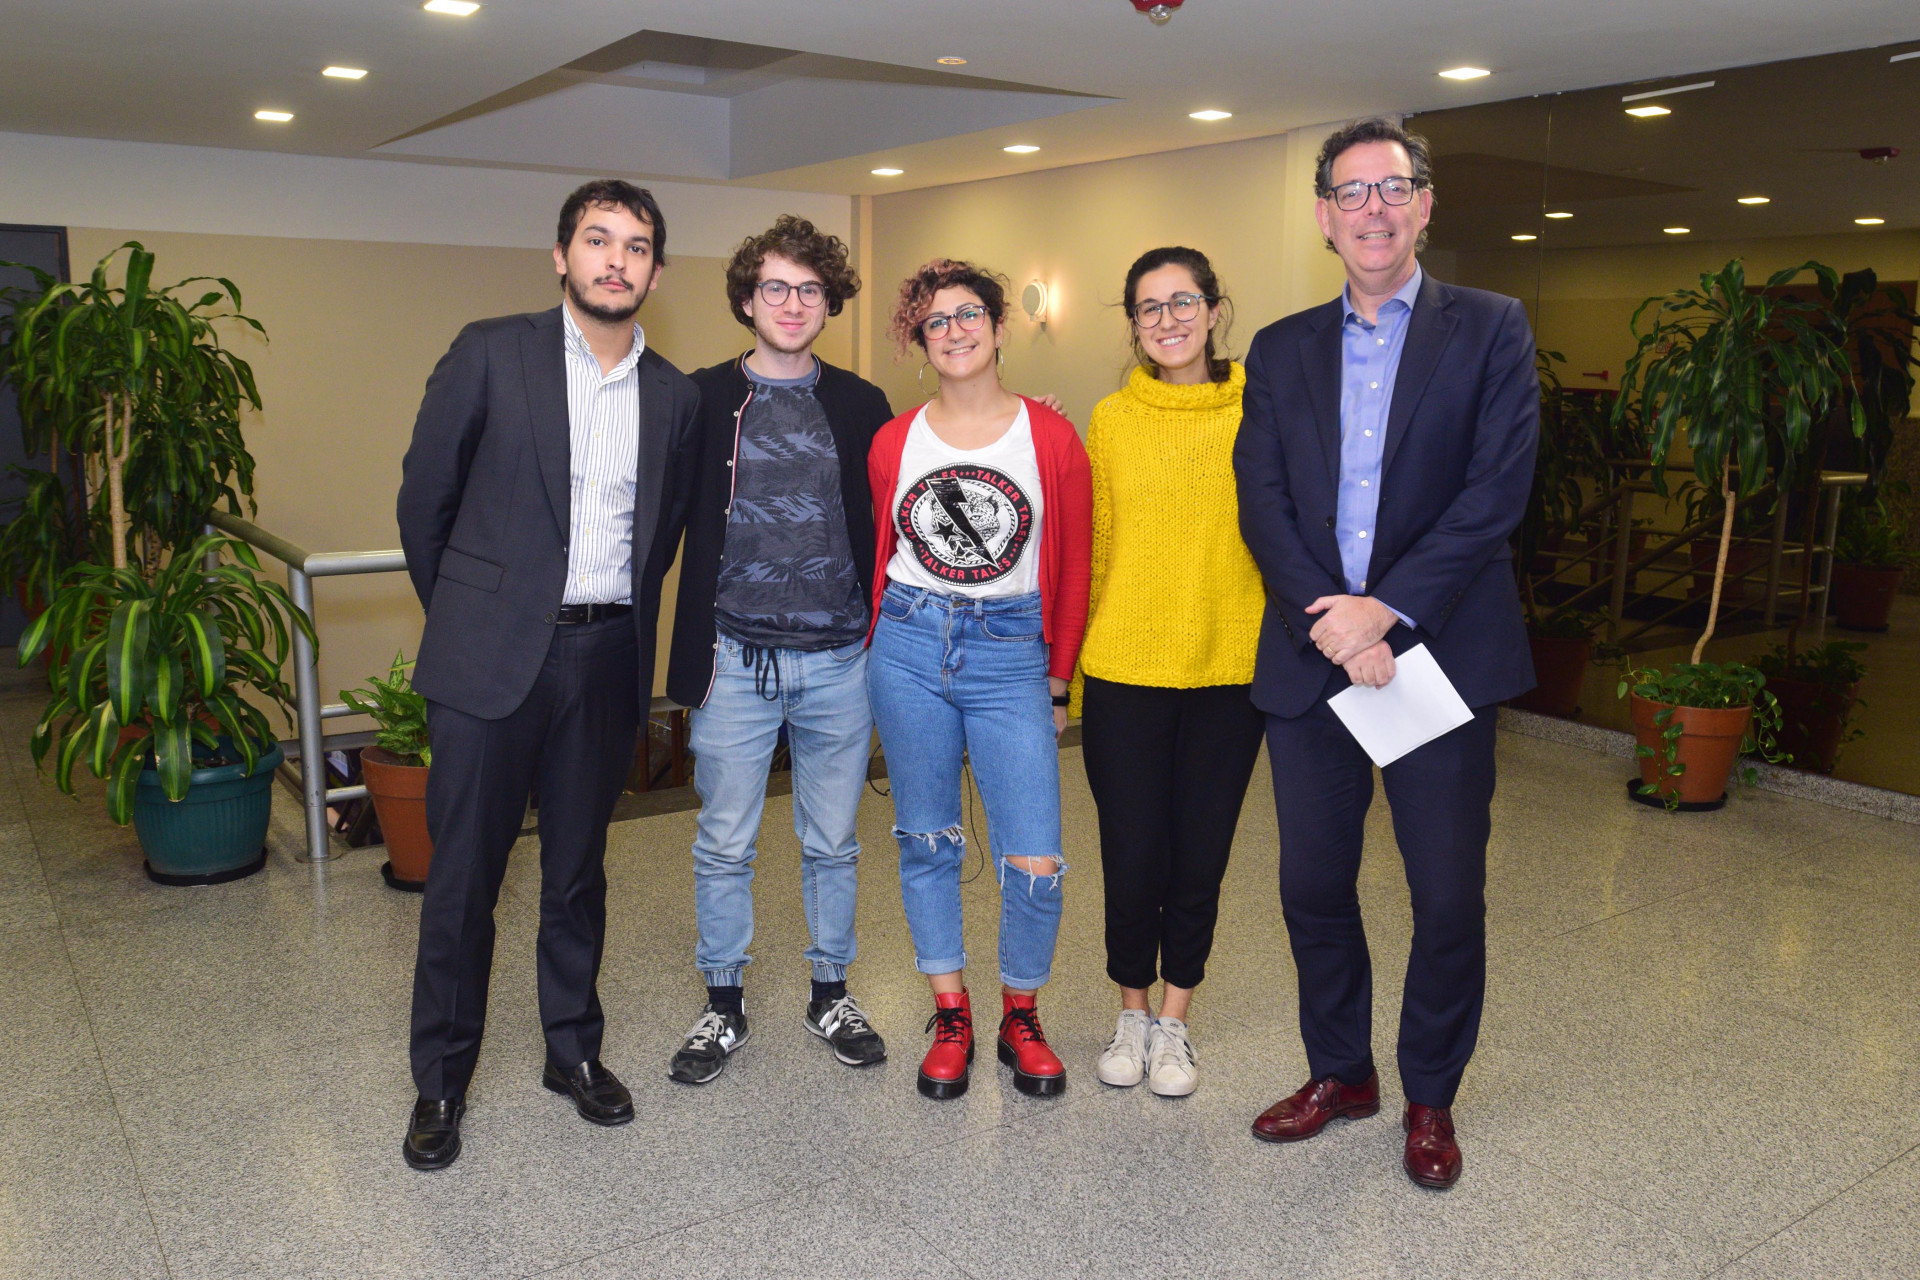 Los jóvenes ejecutivos de Google, flanqueados por Tomás Hergot (Ministerio de Educación) y Juan Pablo Guerrero (CPCECABA)